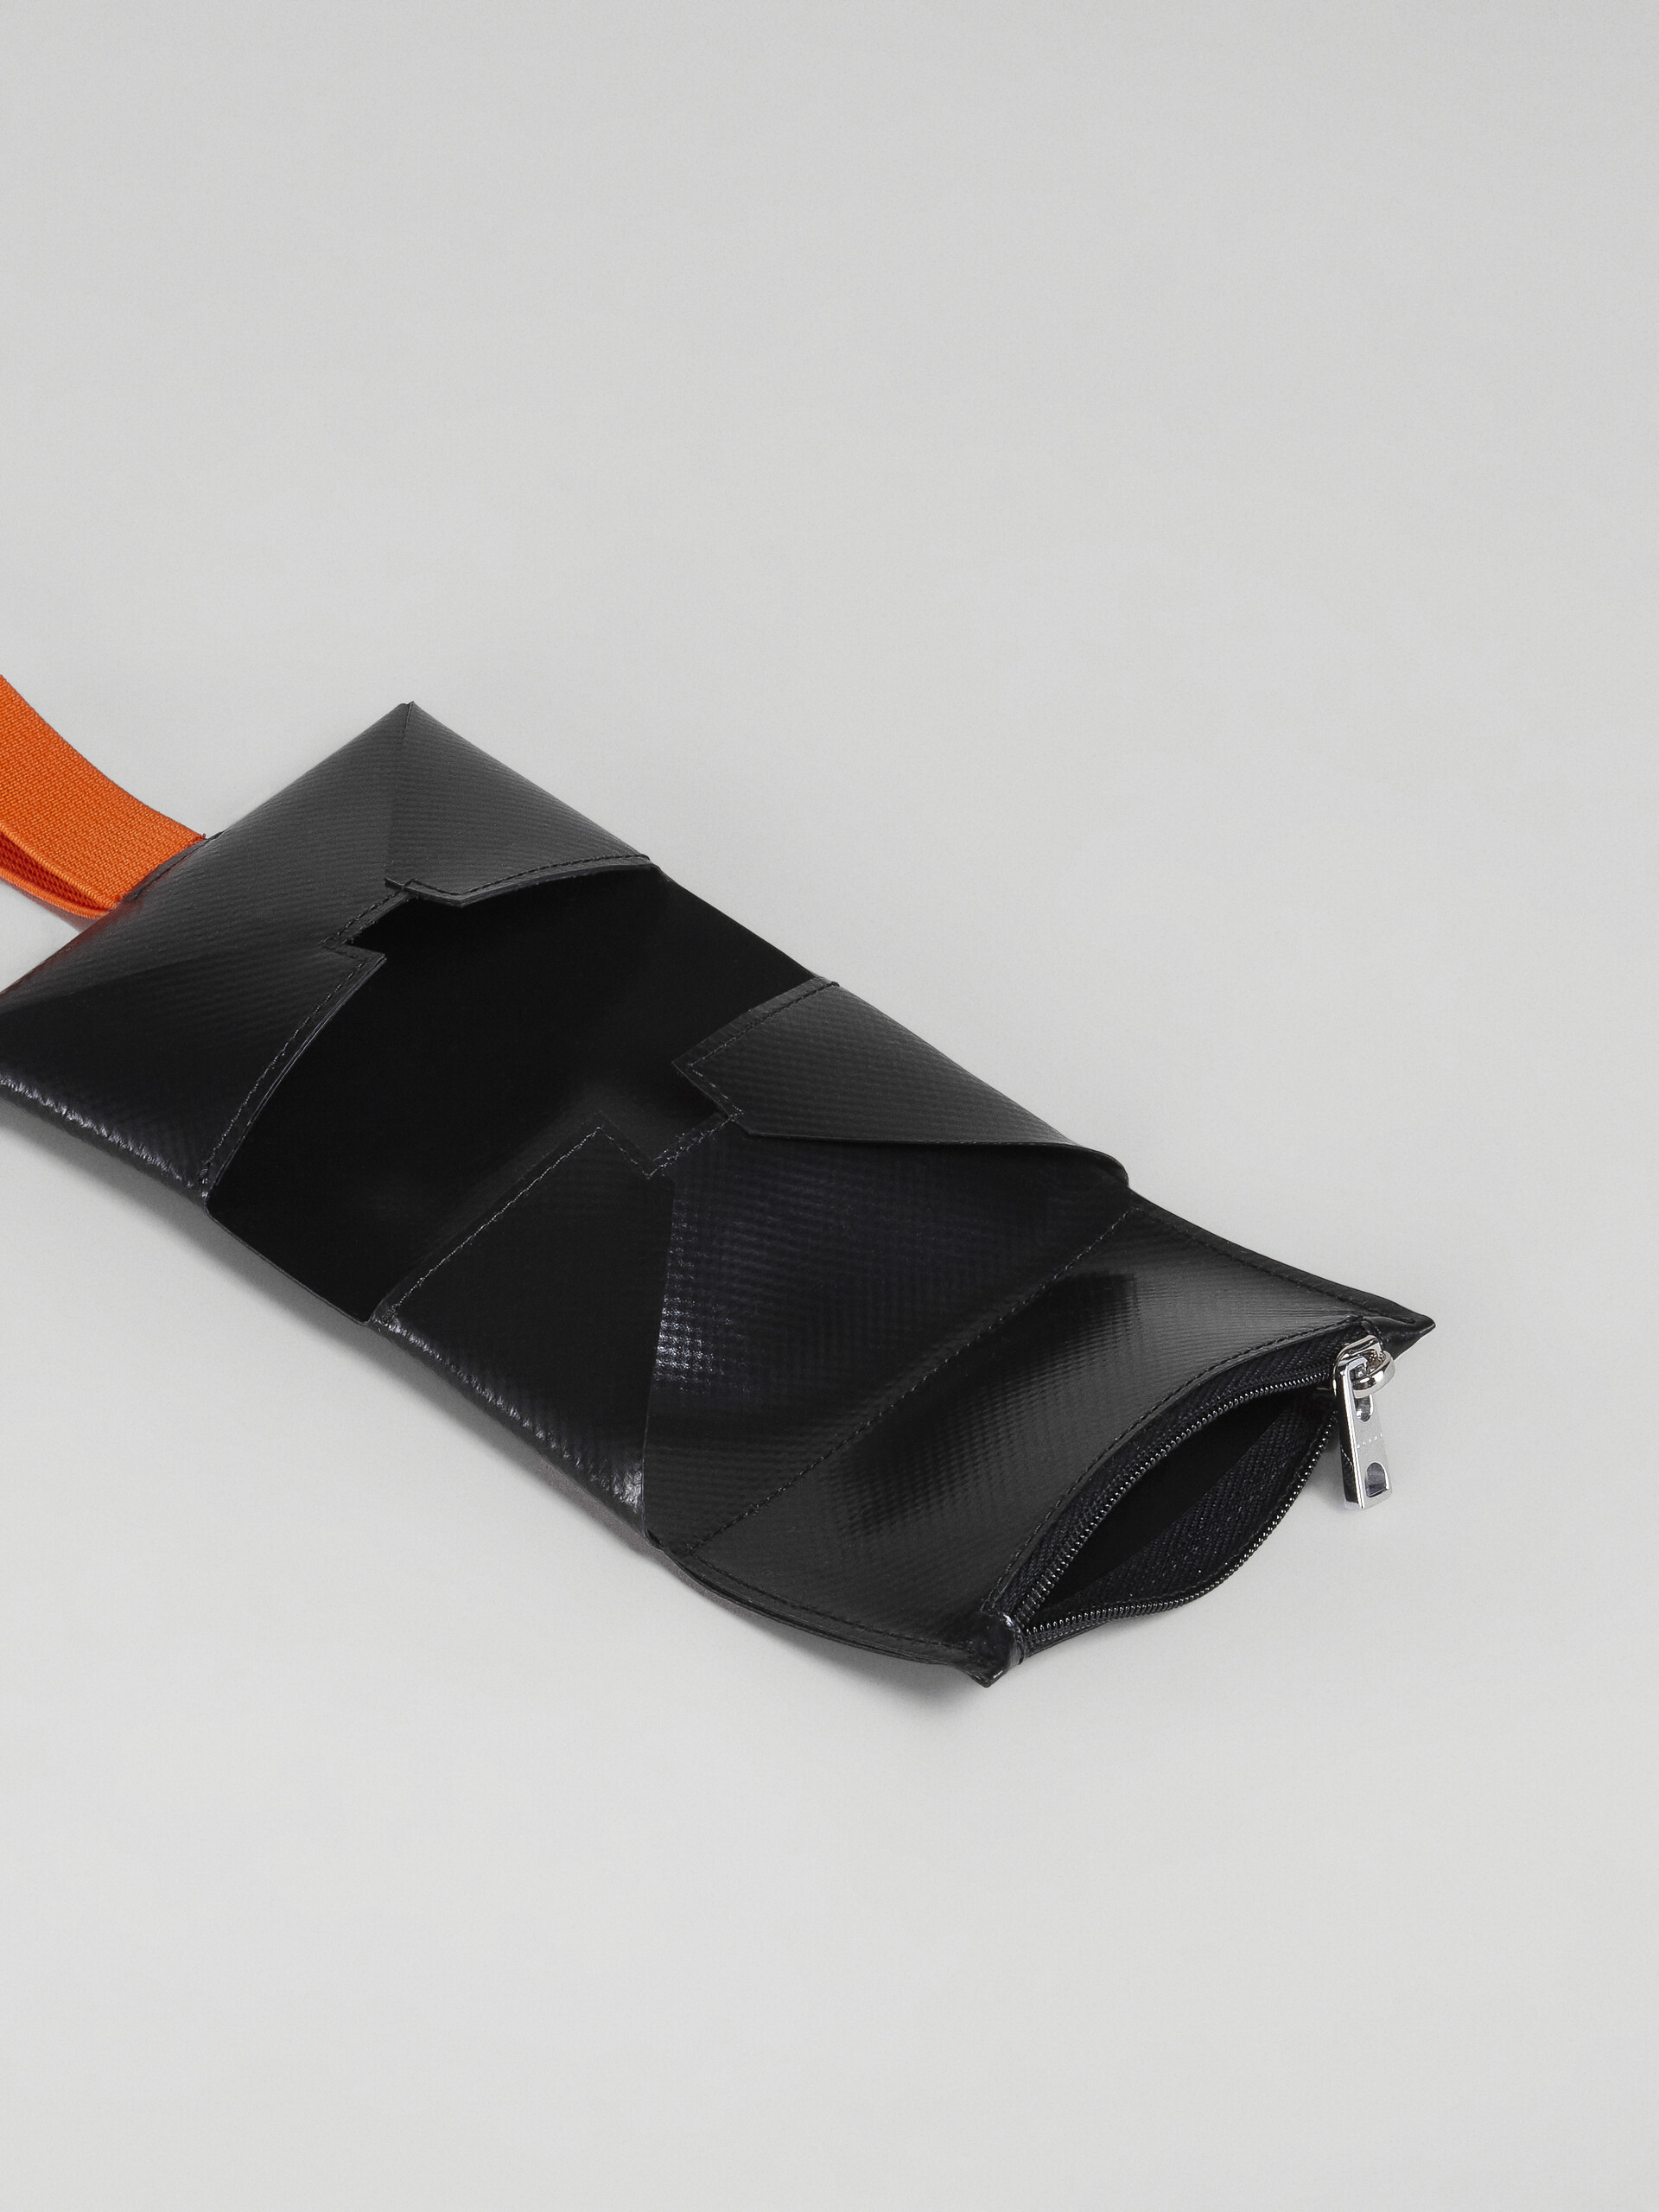 Portefeuille origami orange et noir - Portefeuilles - Image 2